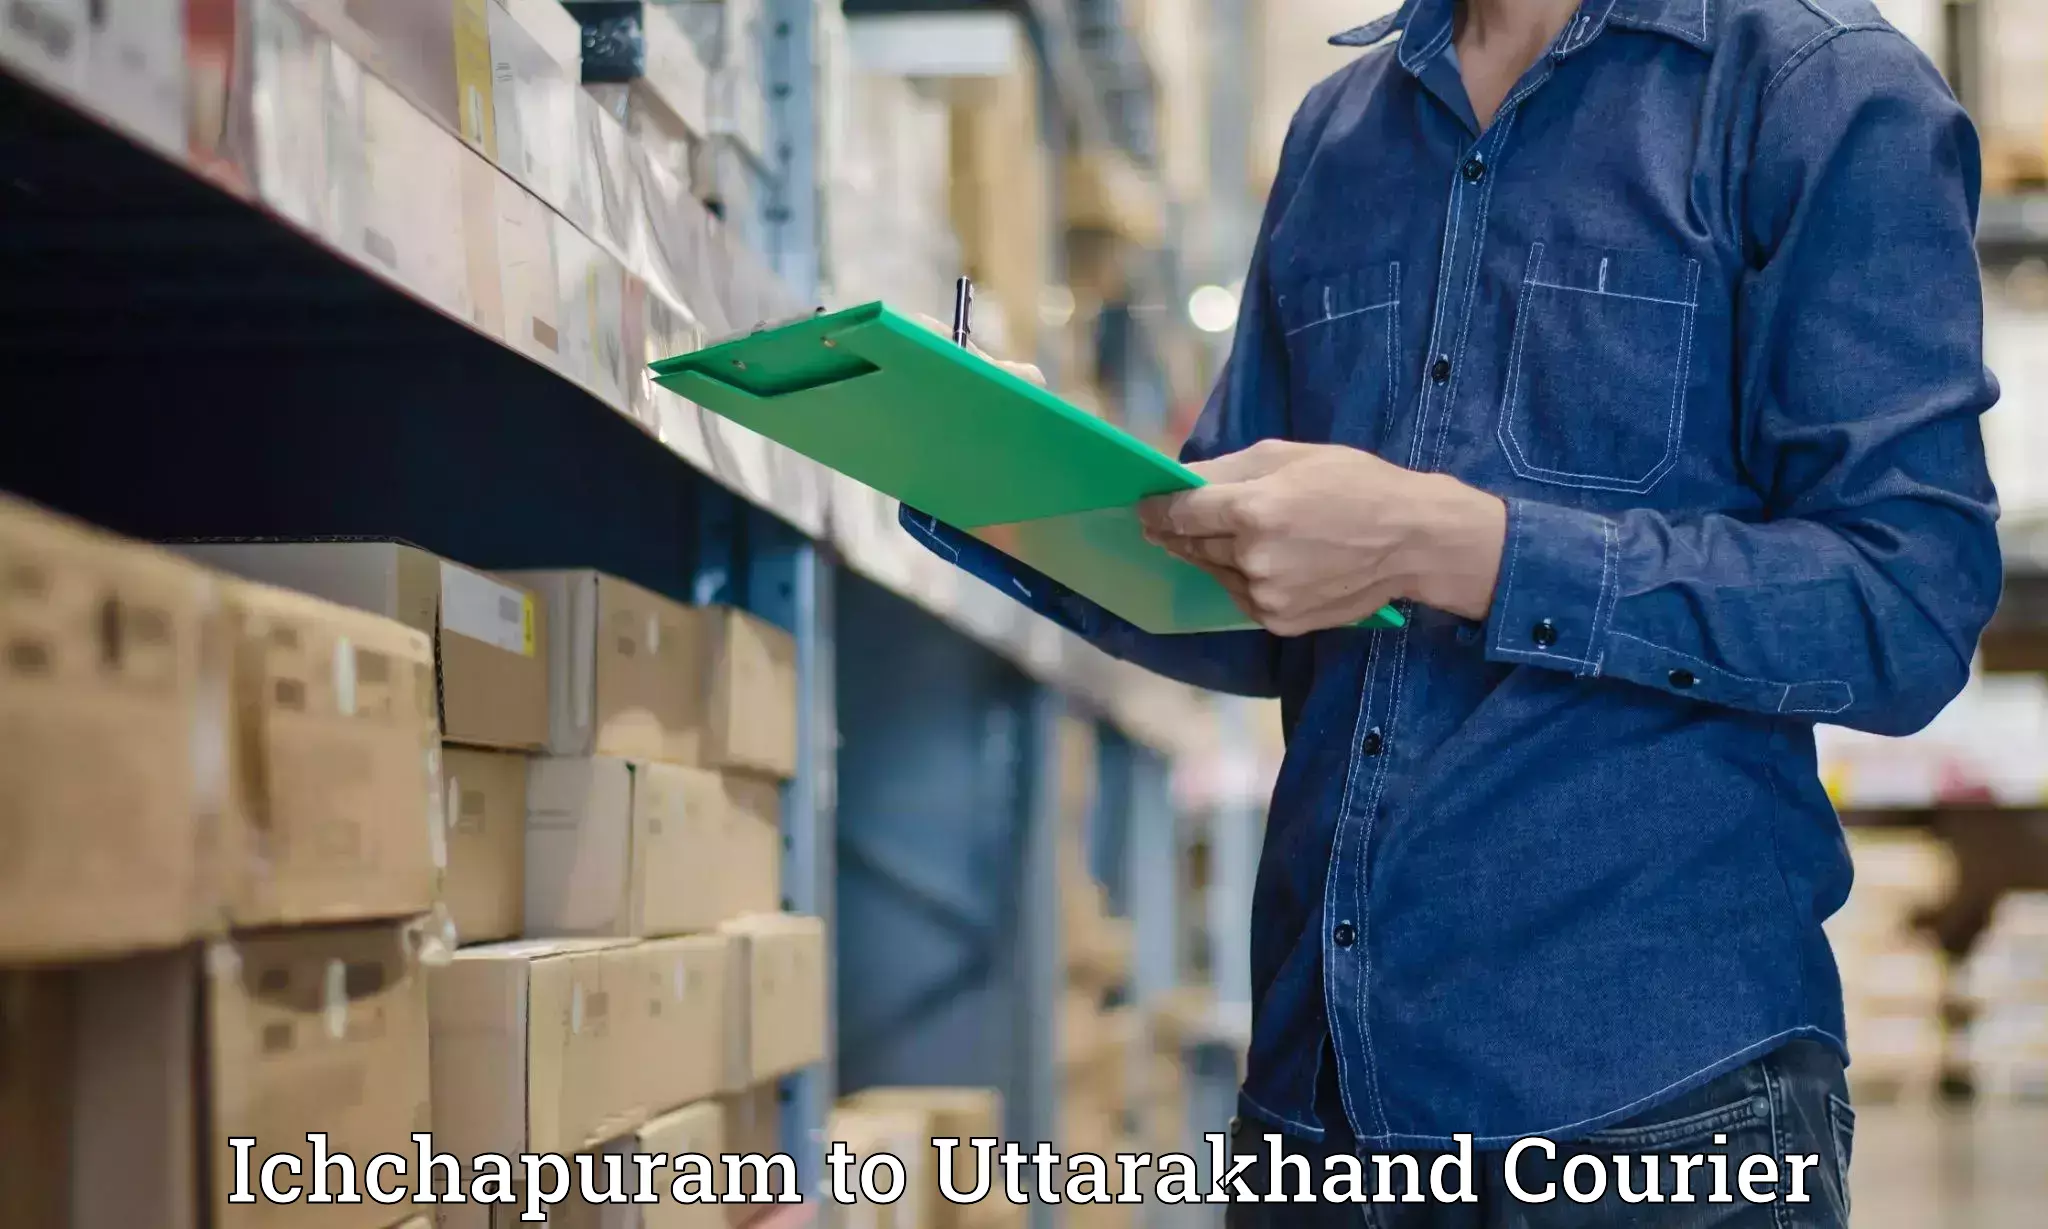 Cash on delivery service Ichchapuram to Champawat